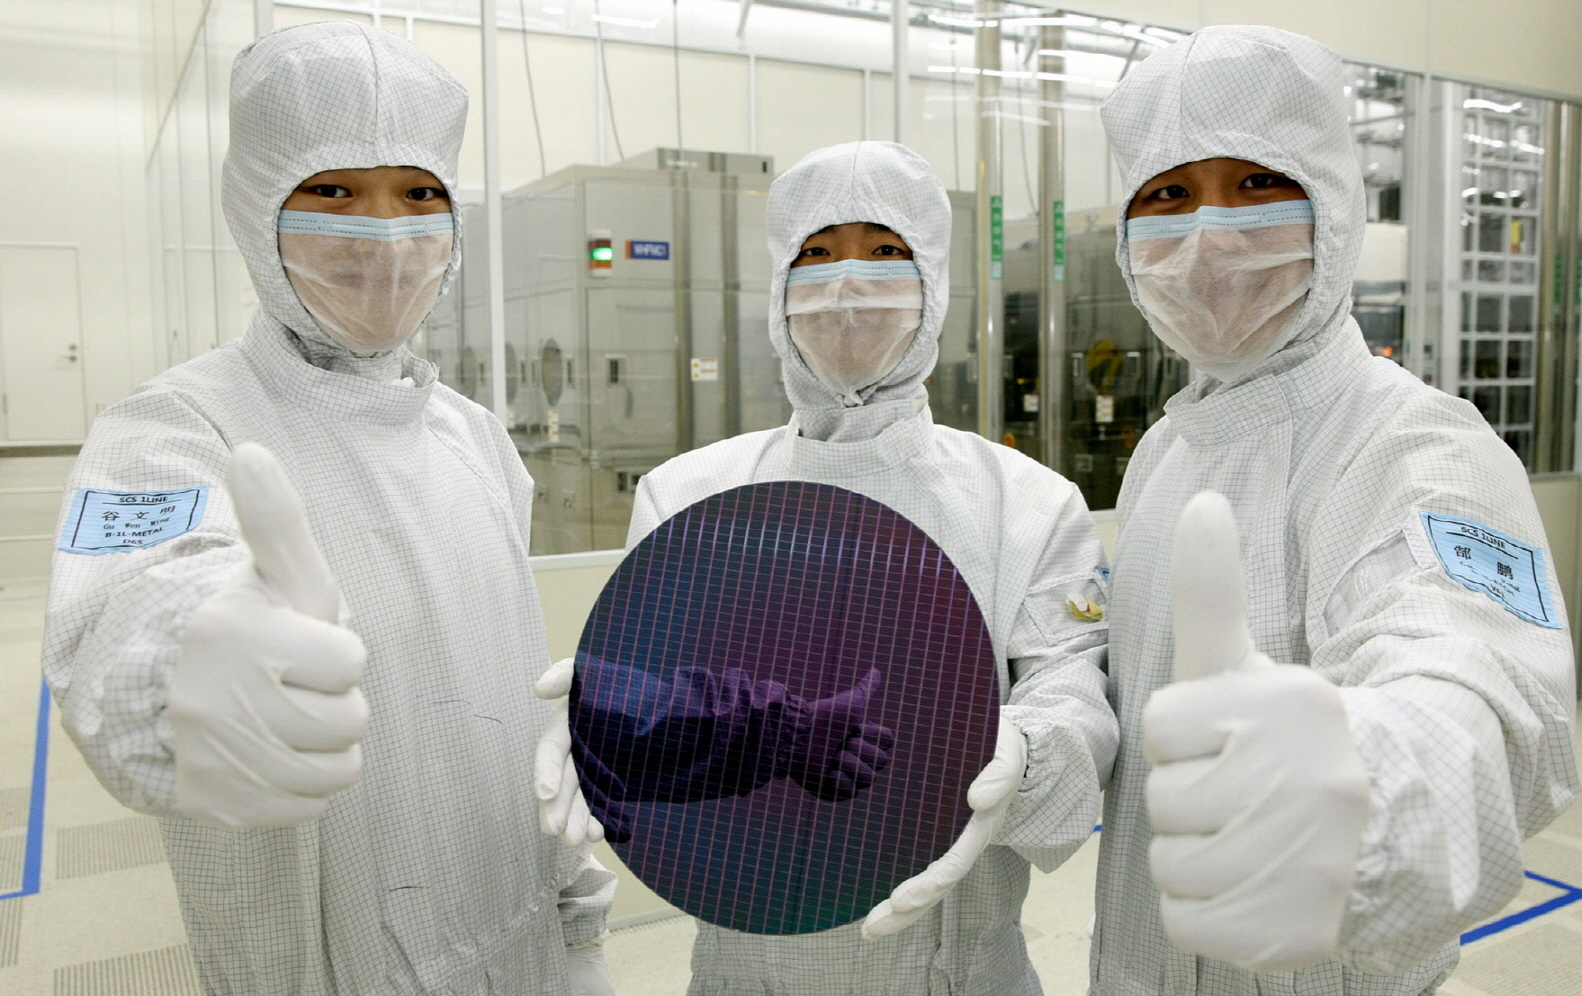 Samsung SSD dünyasına yön verecek yeni teknolojilerini tanıttı